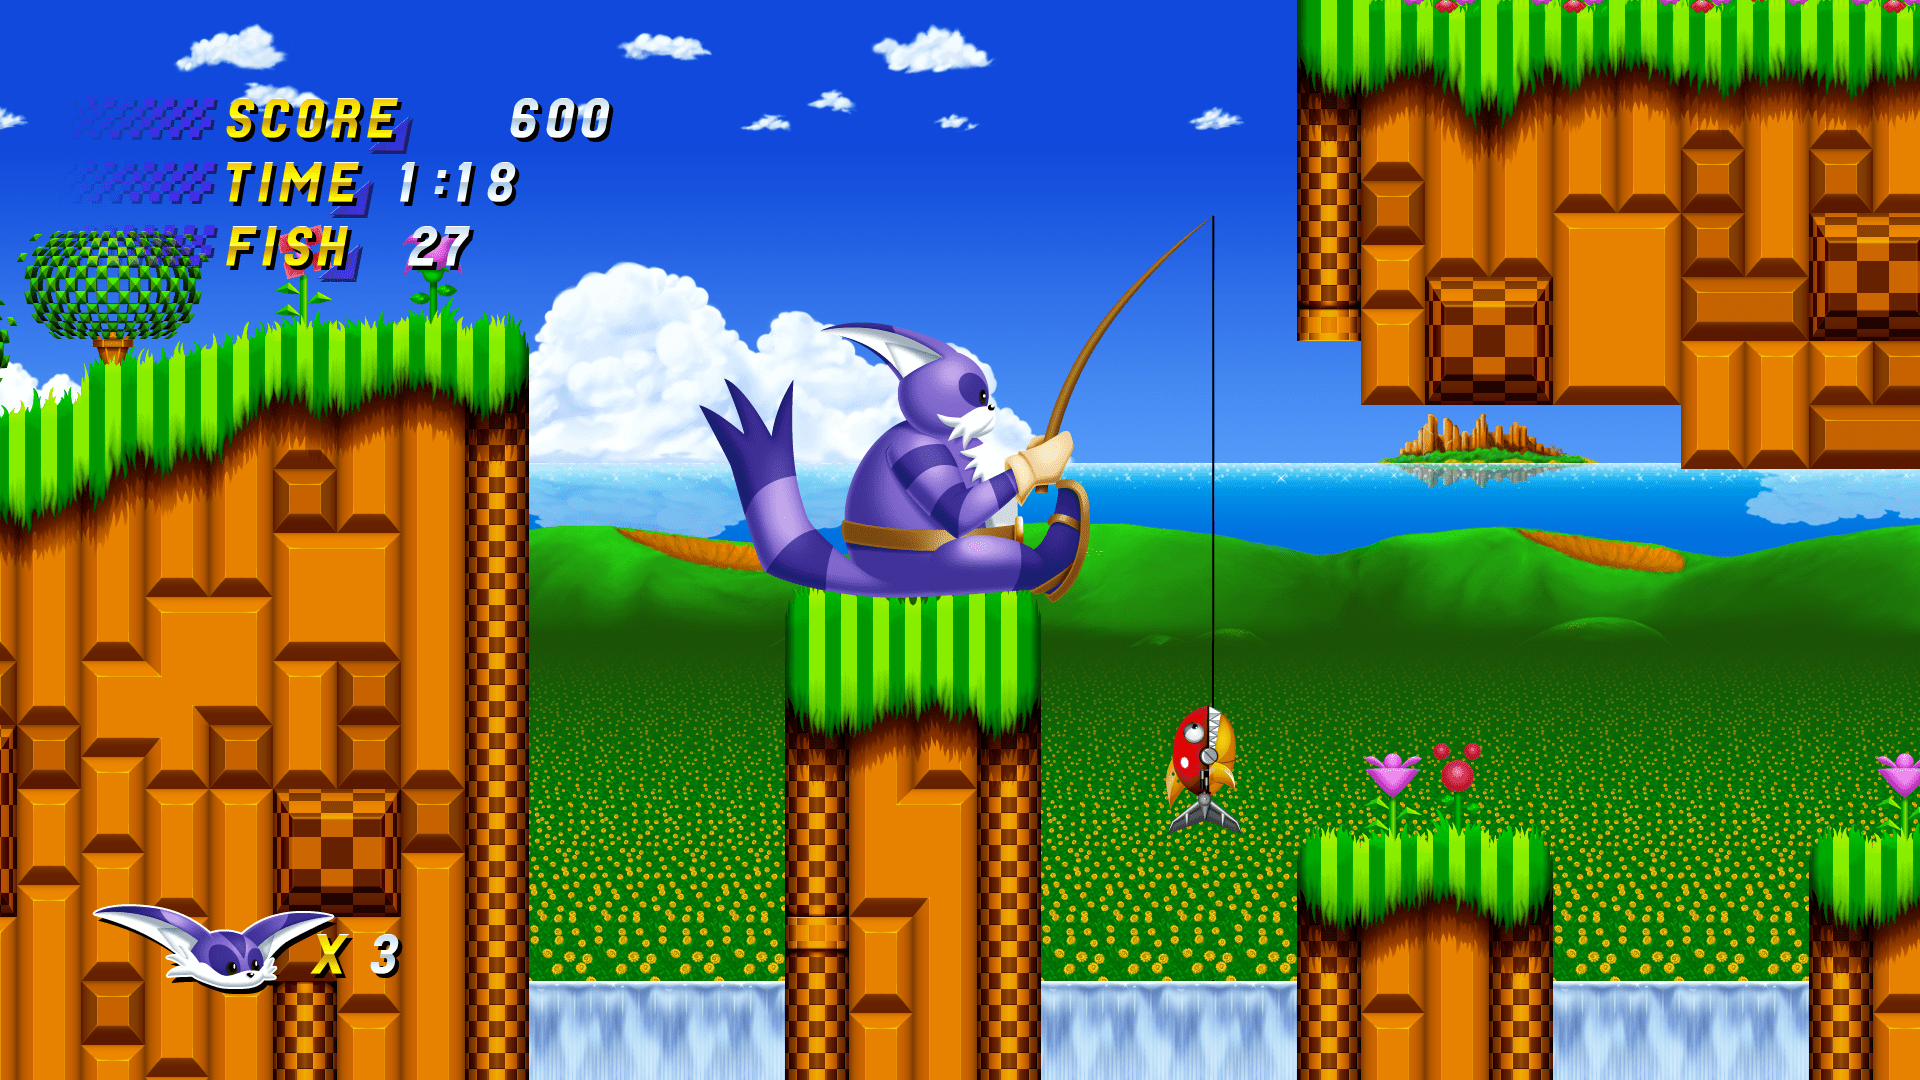 Sonic classic играть. Игра Sonic the Hedgehog 2. Соник игра на сеге 2. Sonic 1991.